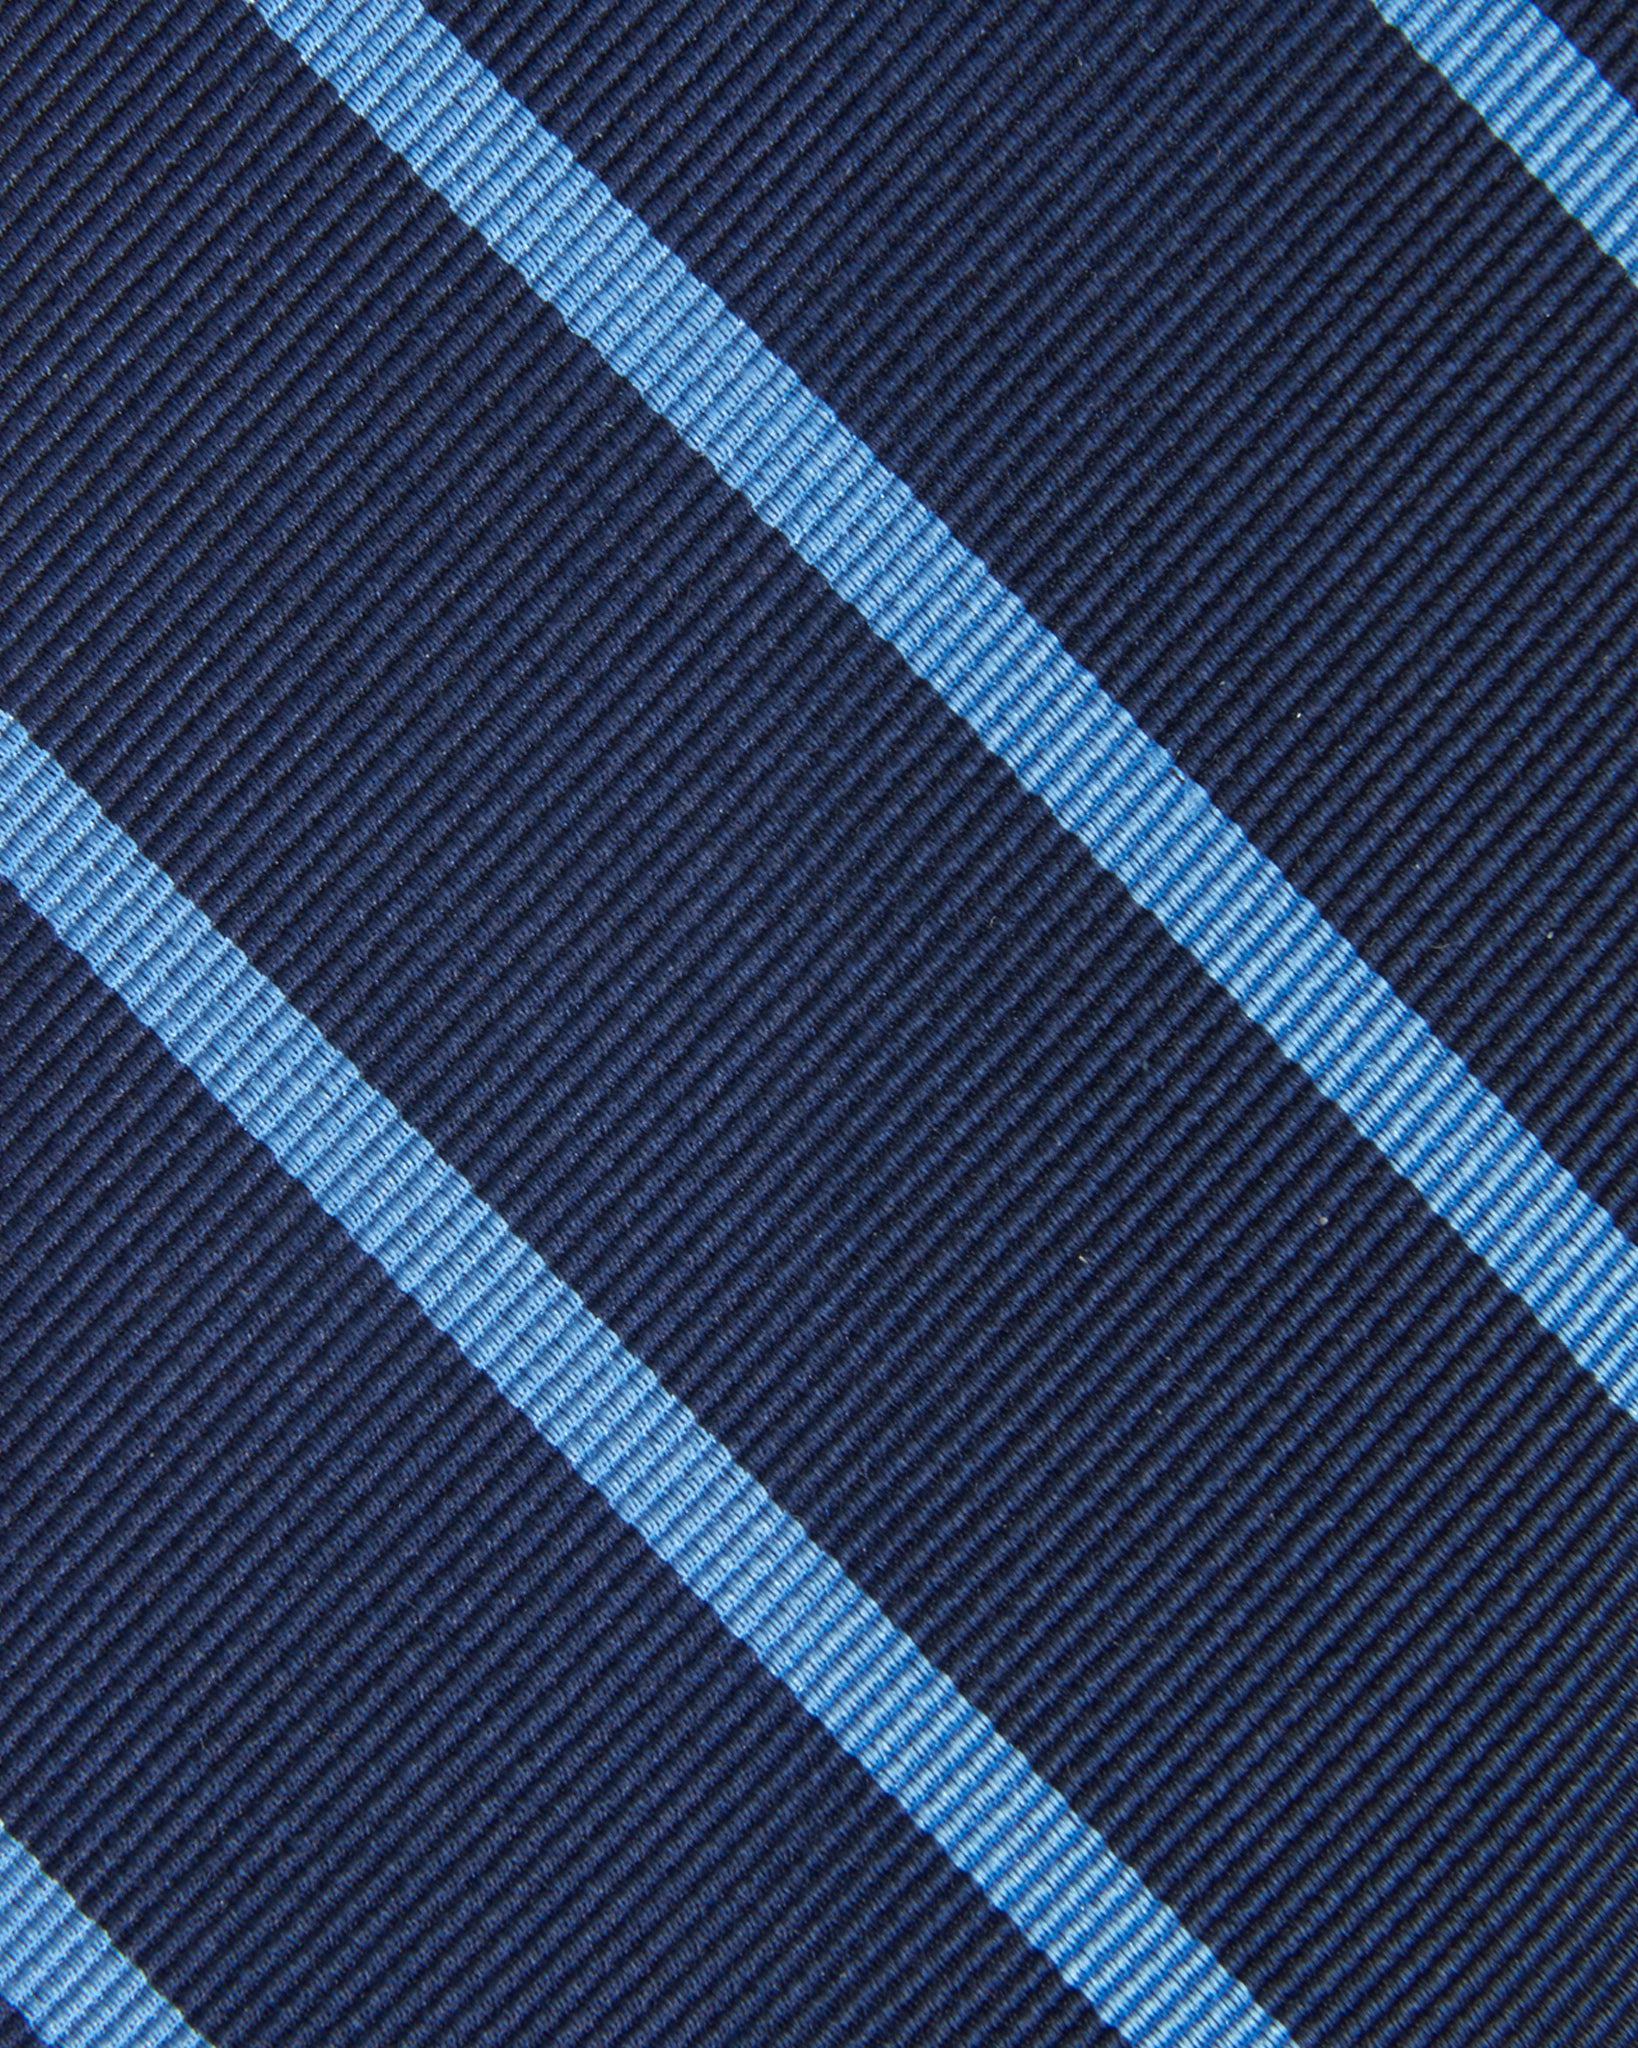 Silk Woven Tie in Navy/Dusty Blue Stripe